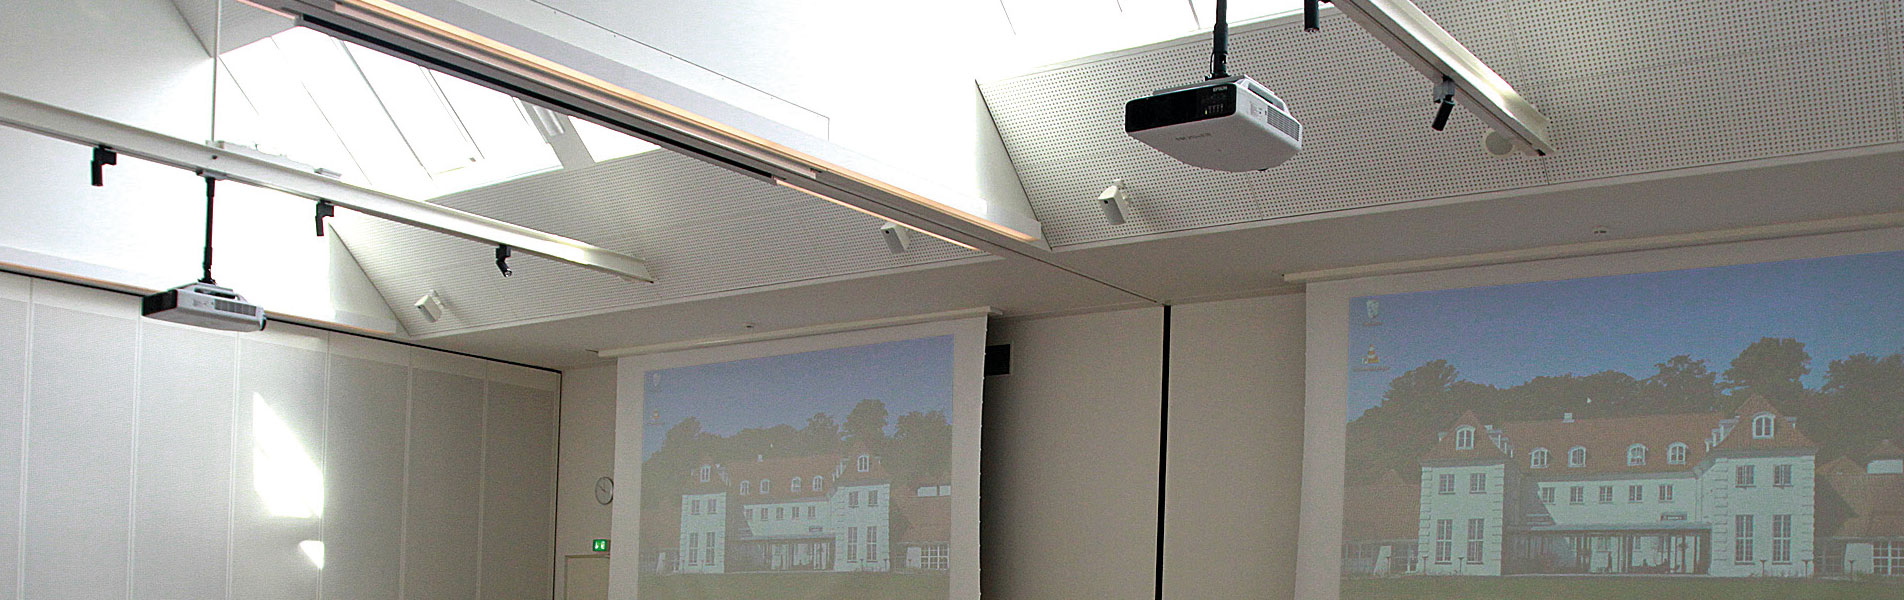 Rungstedgaards konferencelokale kan både fungere som ét stort lokale men kan også deles op i fire mindre lokaler eller seks grupperum